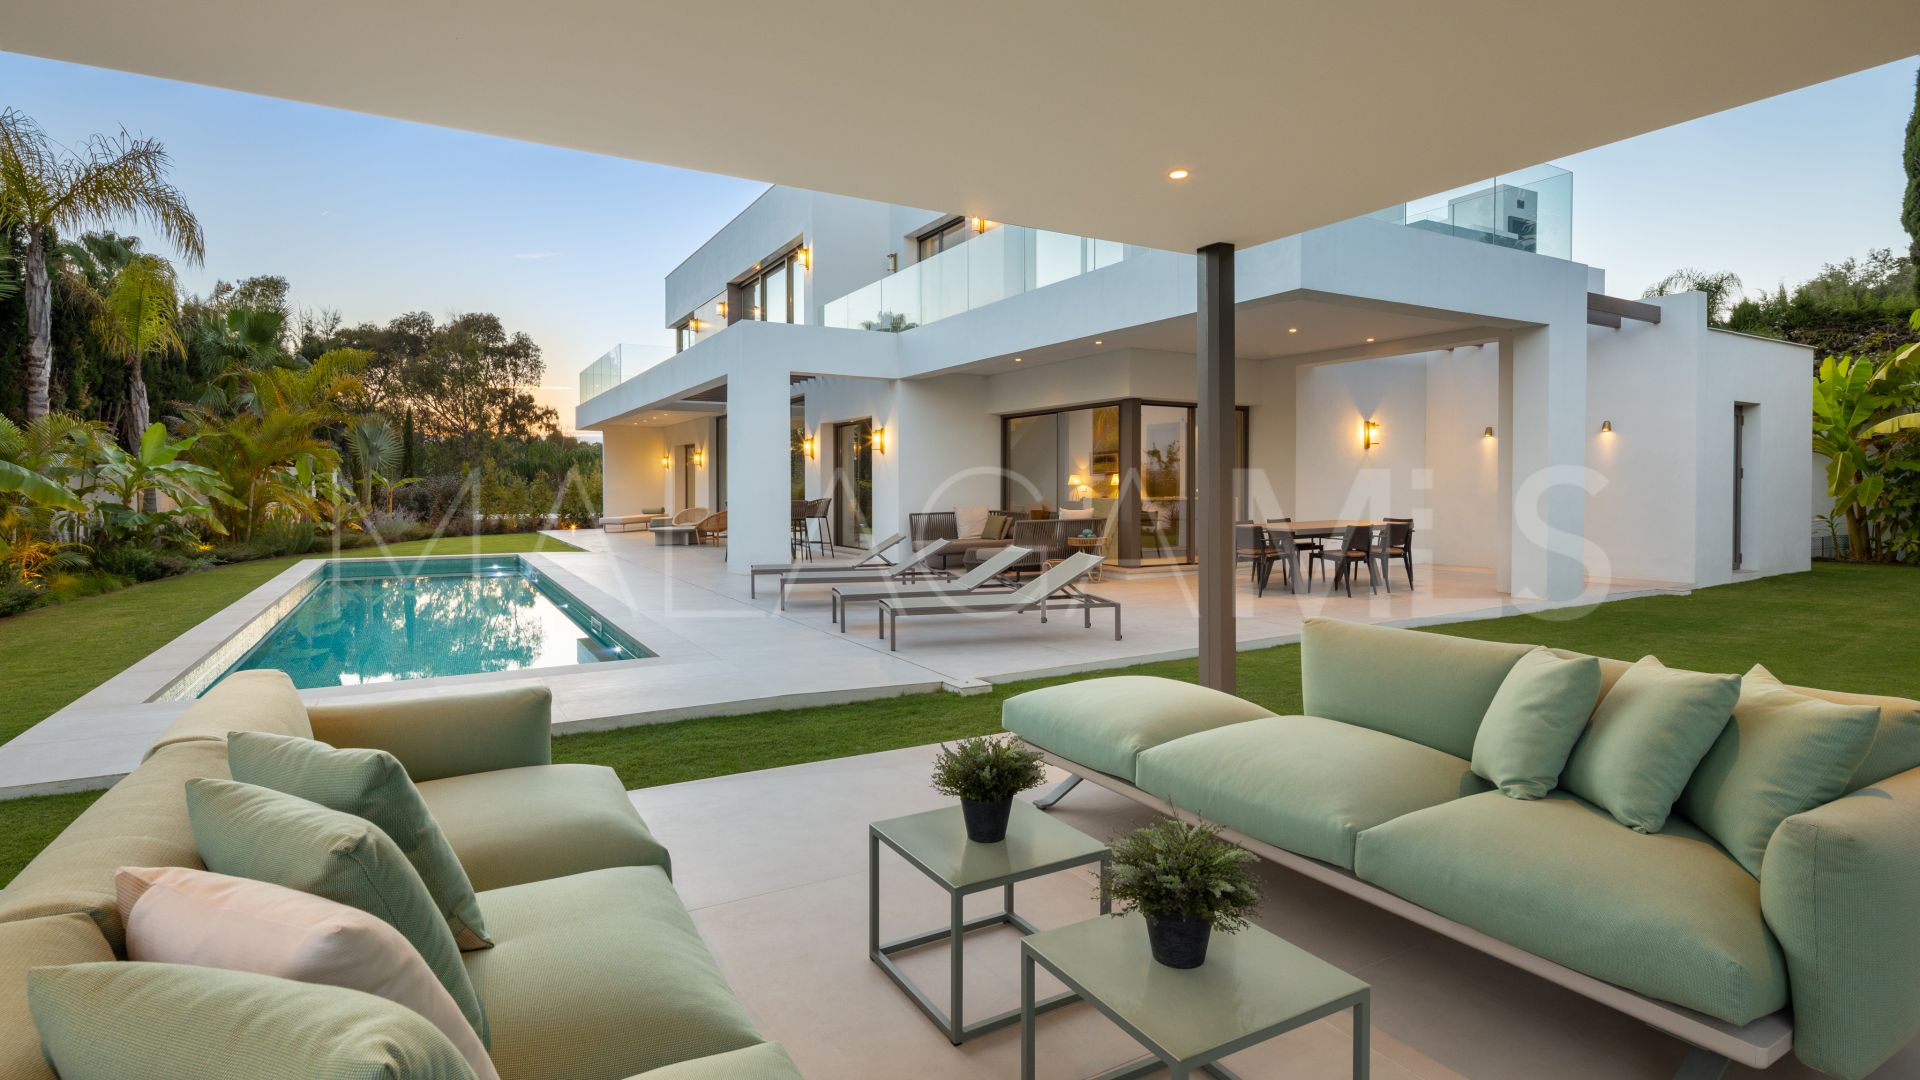 Villa for sale in La Carolina with 5 bedrooms